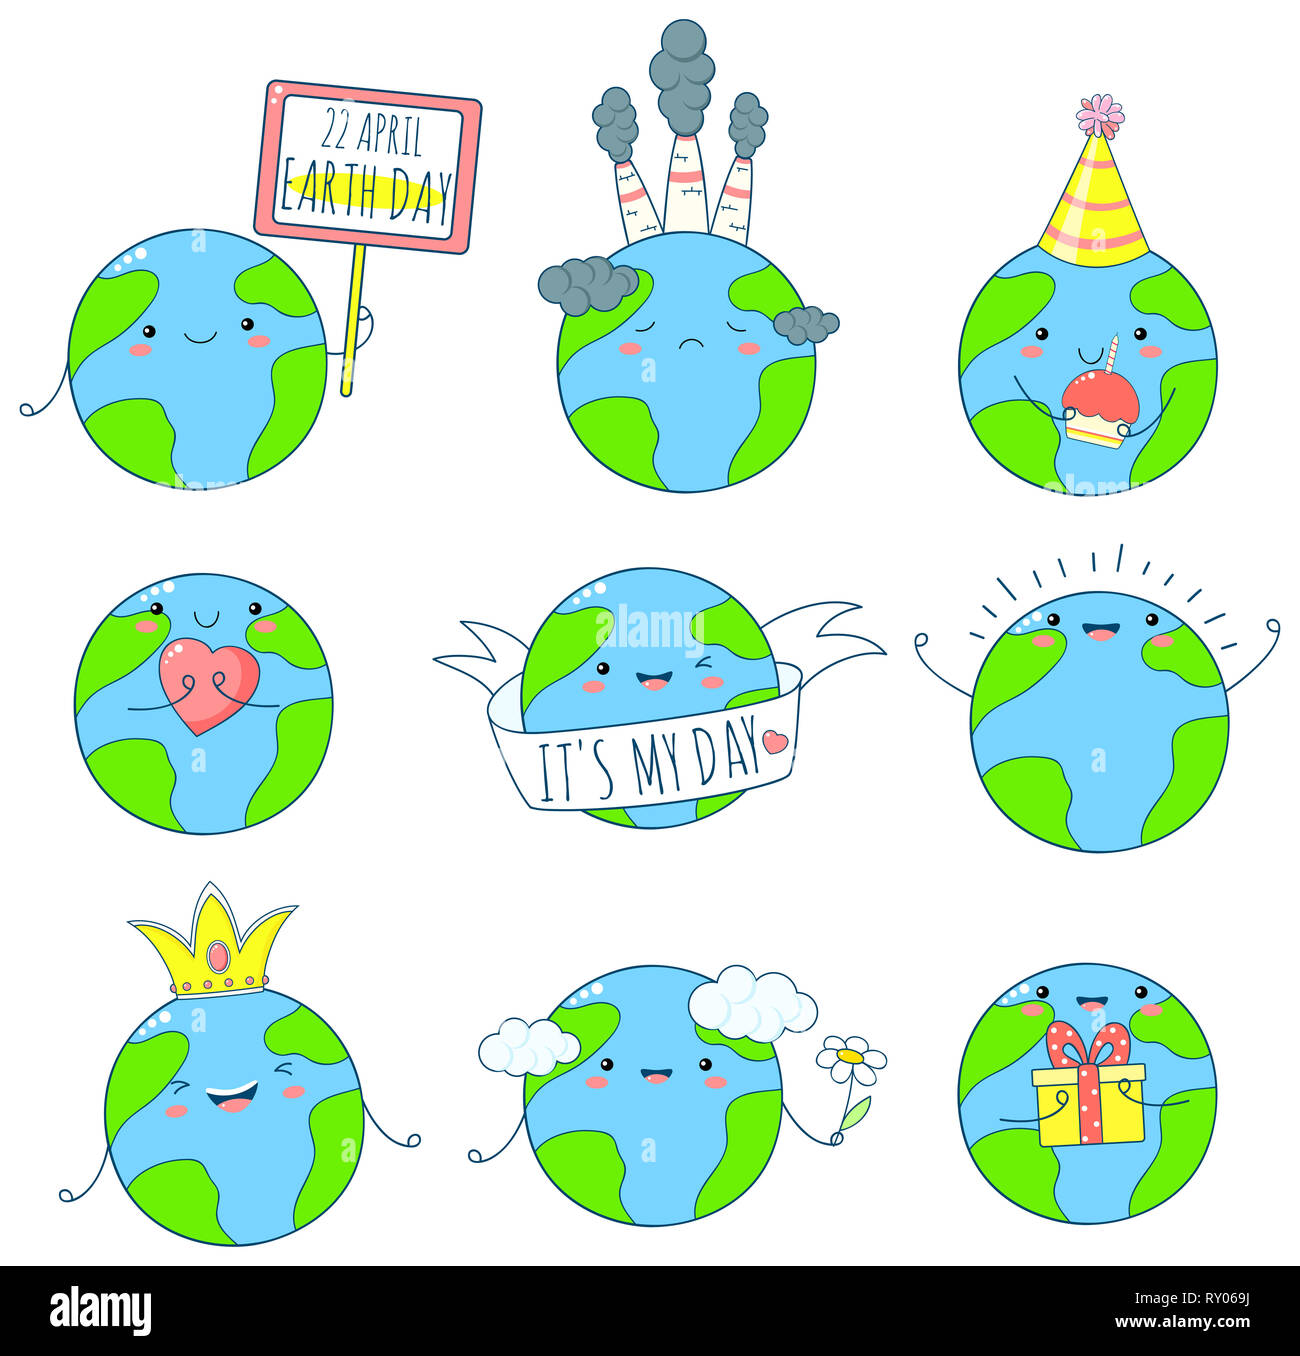 22 avril - Jour de la Terre. Ensemble d'icônes de la Terre cute kawaii style avec sourire et joues roses. Planètes avec fleur, coeur, Don. Spe8 Banque D'Images